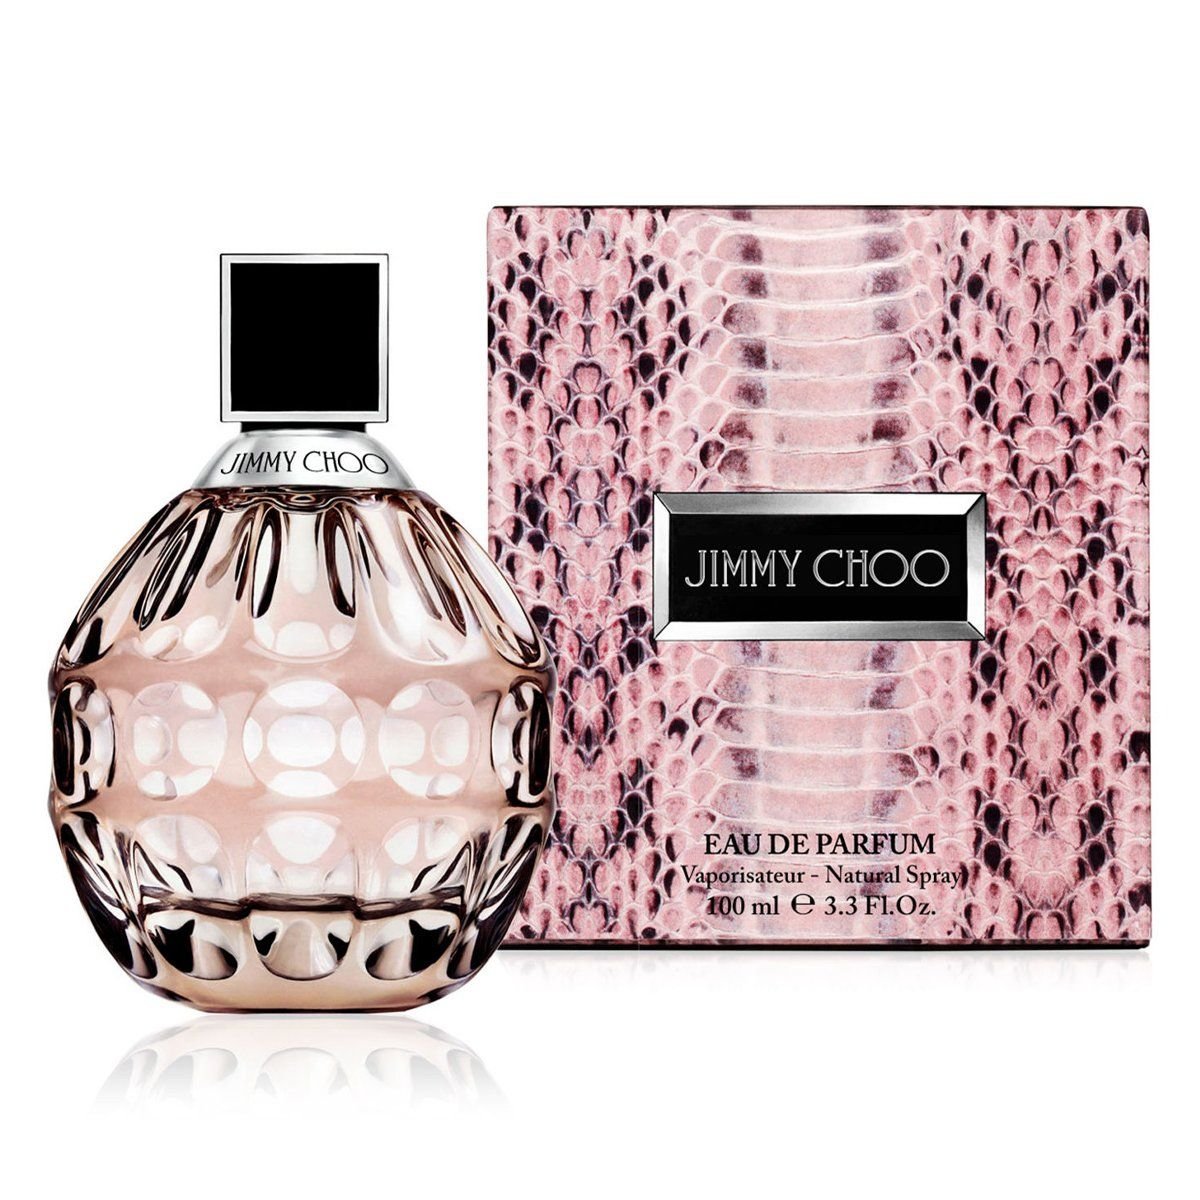  Jimmy Choo Eau de Parfum 